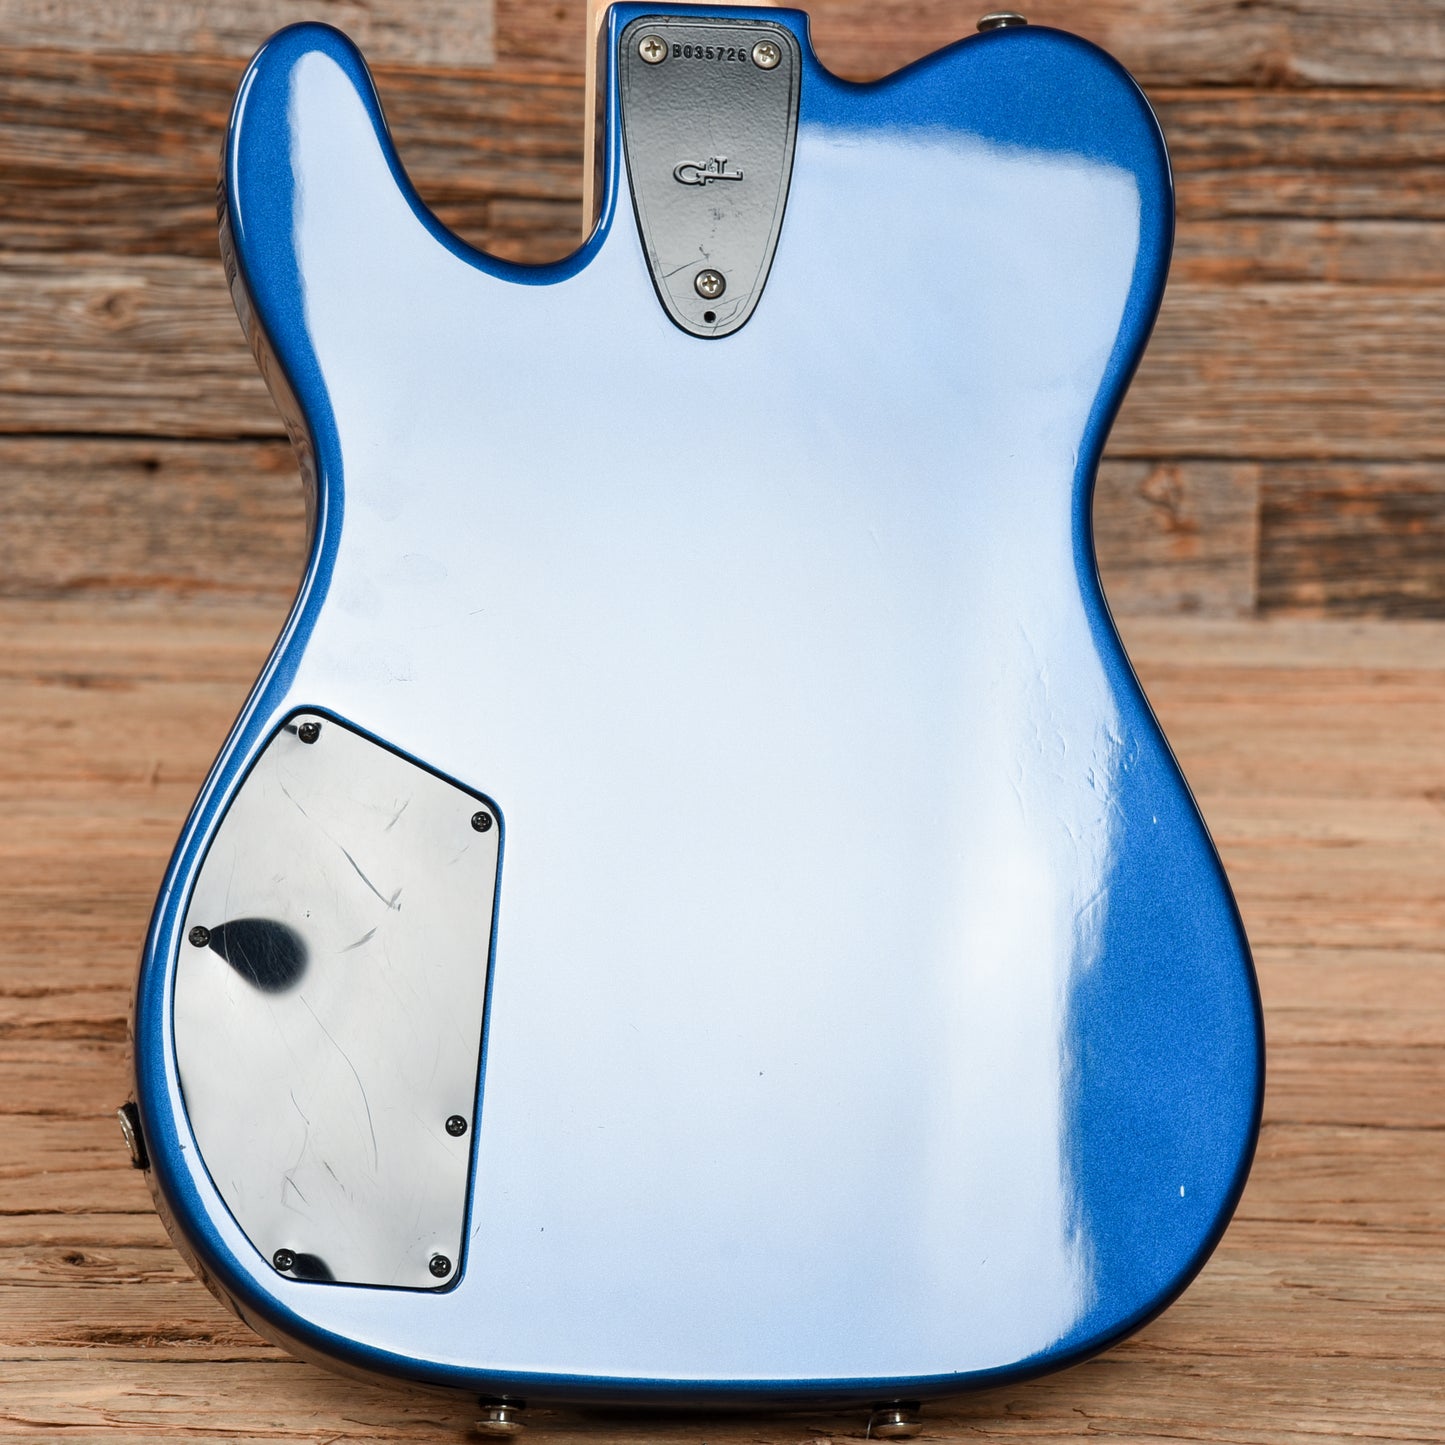 G&L ASAT Bass Semi-Hollow Blue